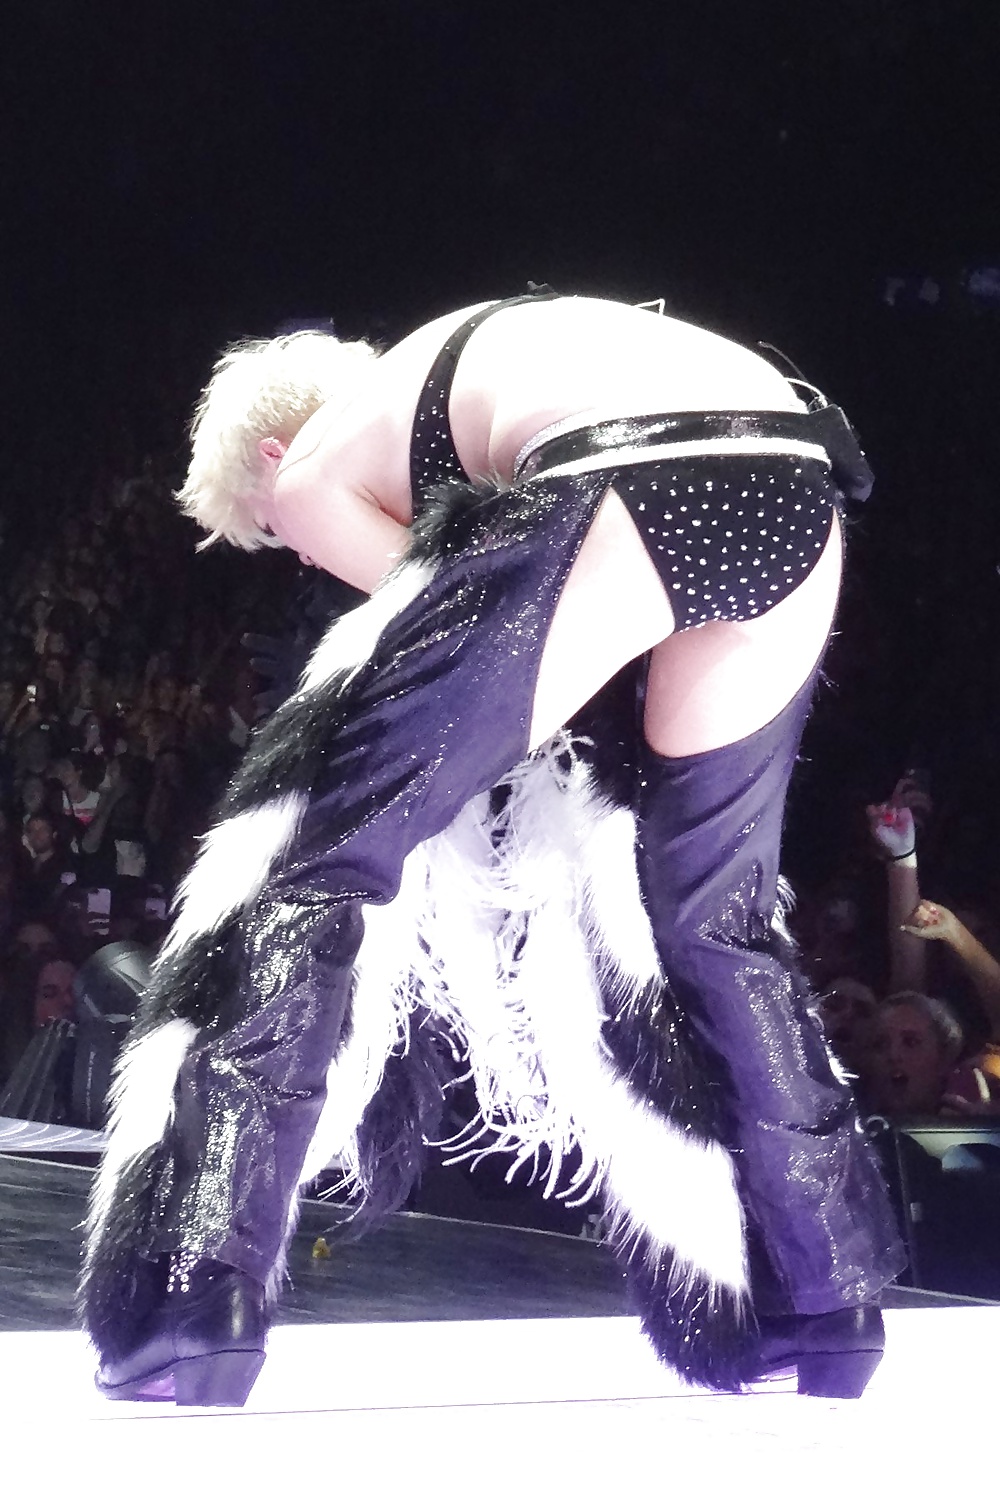 Miley cyrus - esta zorra necesita un polvo duro
 #35367179